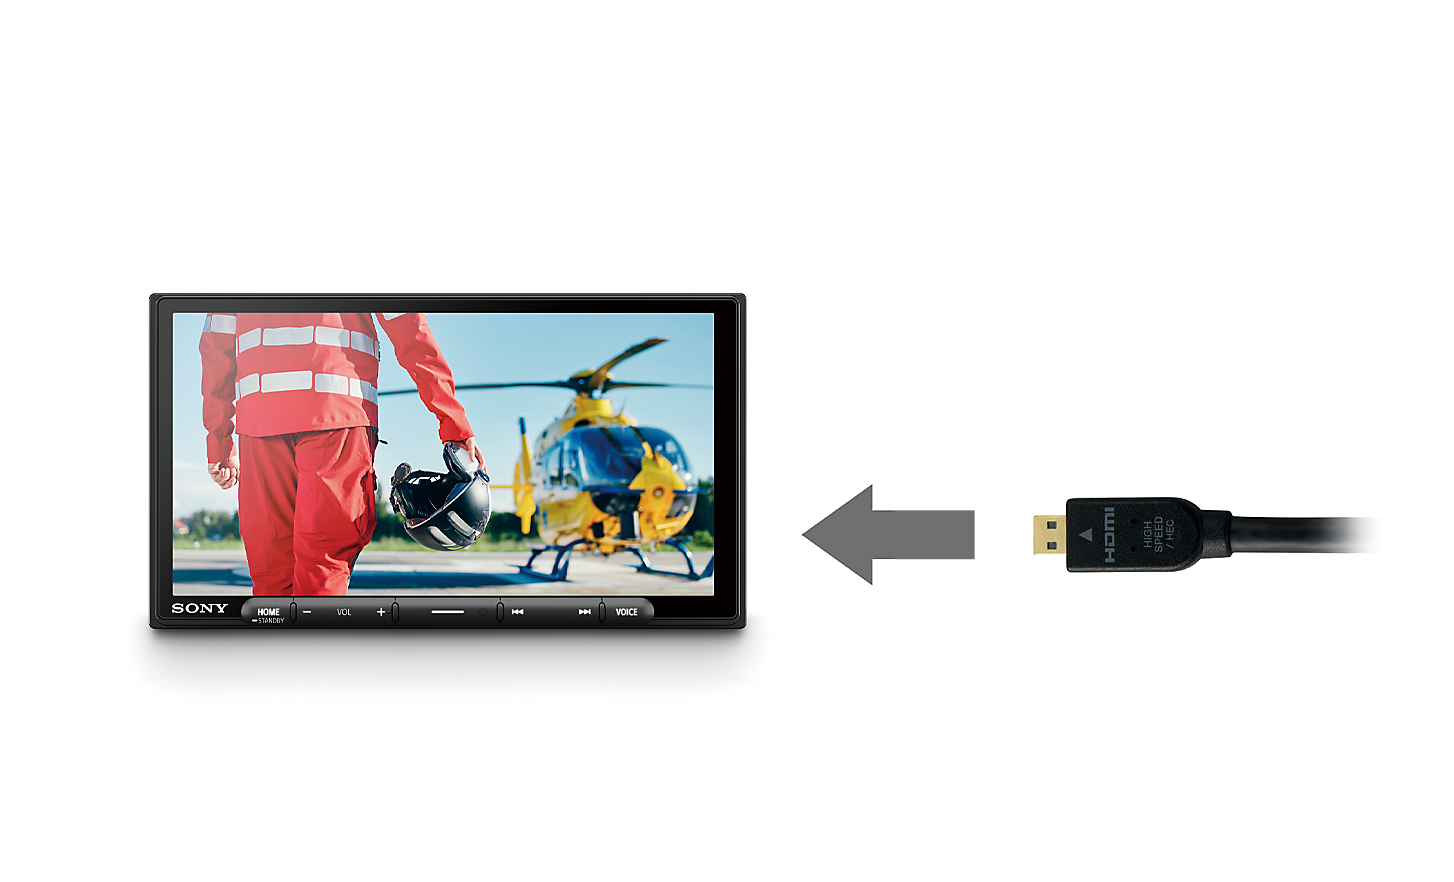 Afbeelding van een HDMI-kabel met een pijl die naar de XAV-AX6050 wijst, met een piloot en een helikopter op het scherm